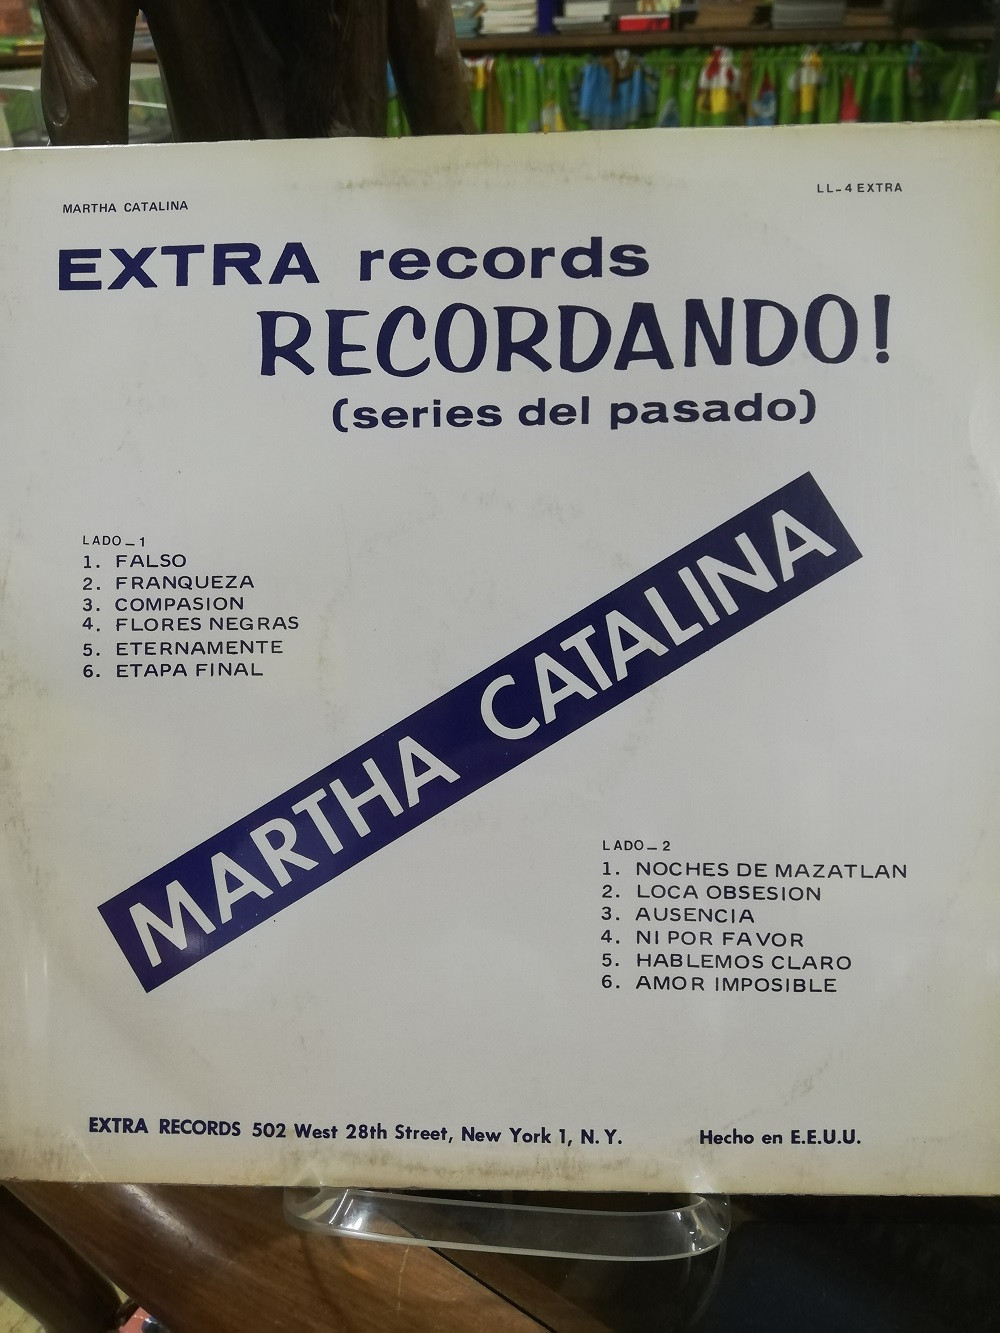 Imagen LP MARTHA CATALINA - RECORDANDO! 1